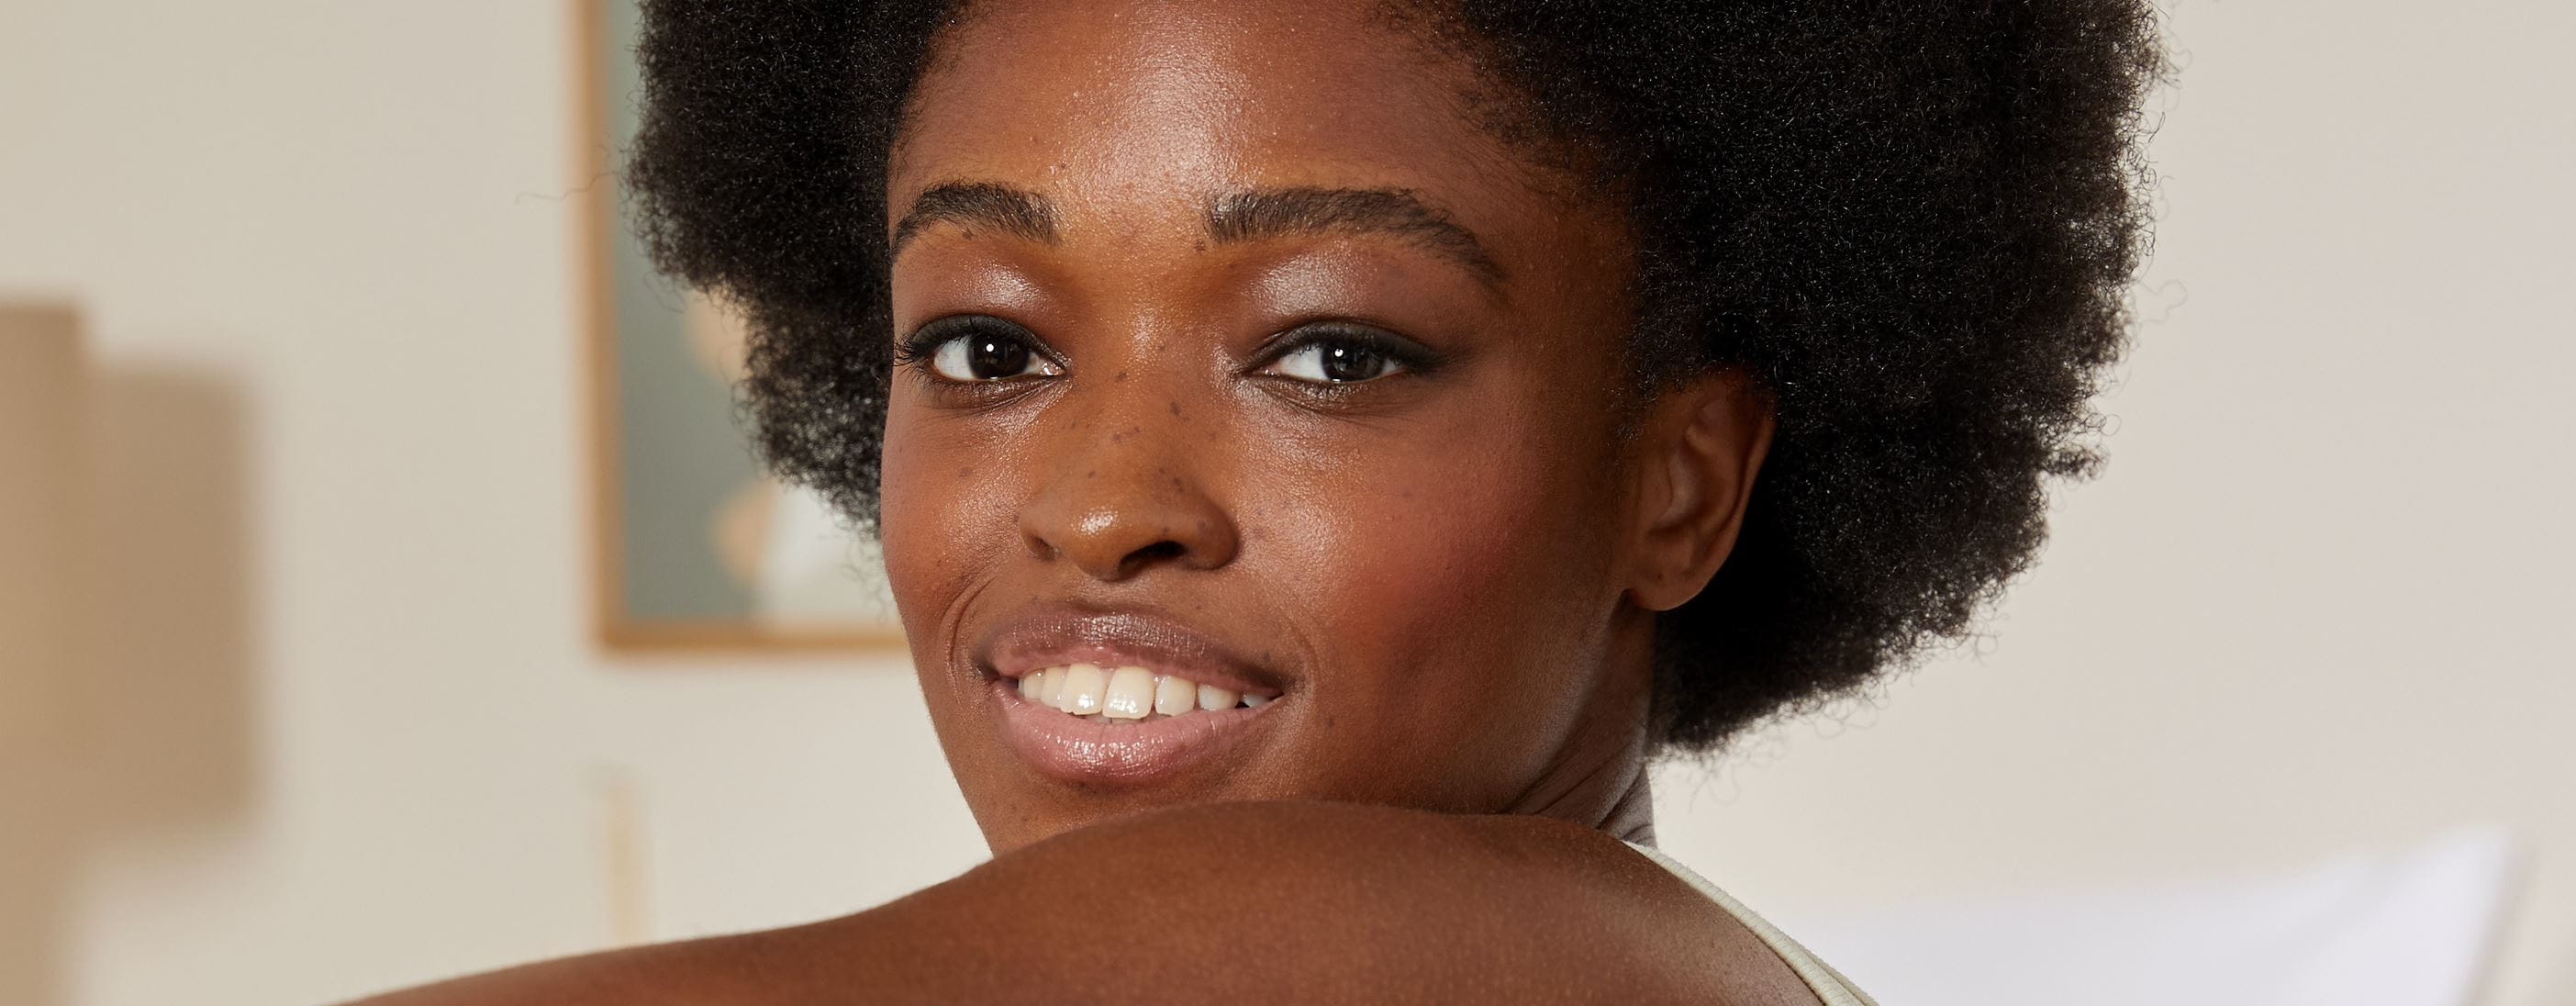 femme aux cheveux afro-texturés, souriante